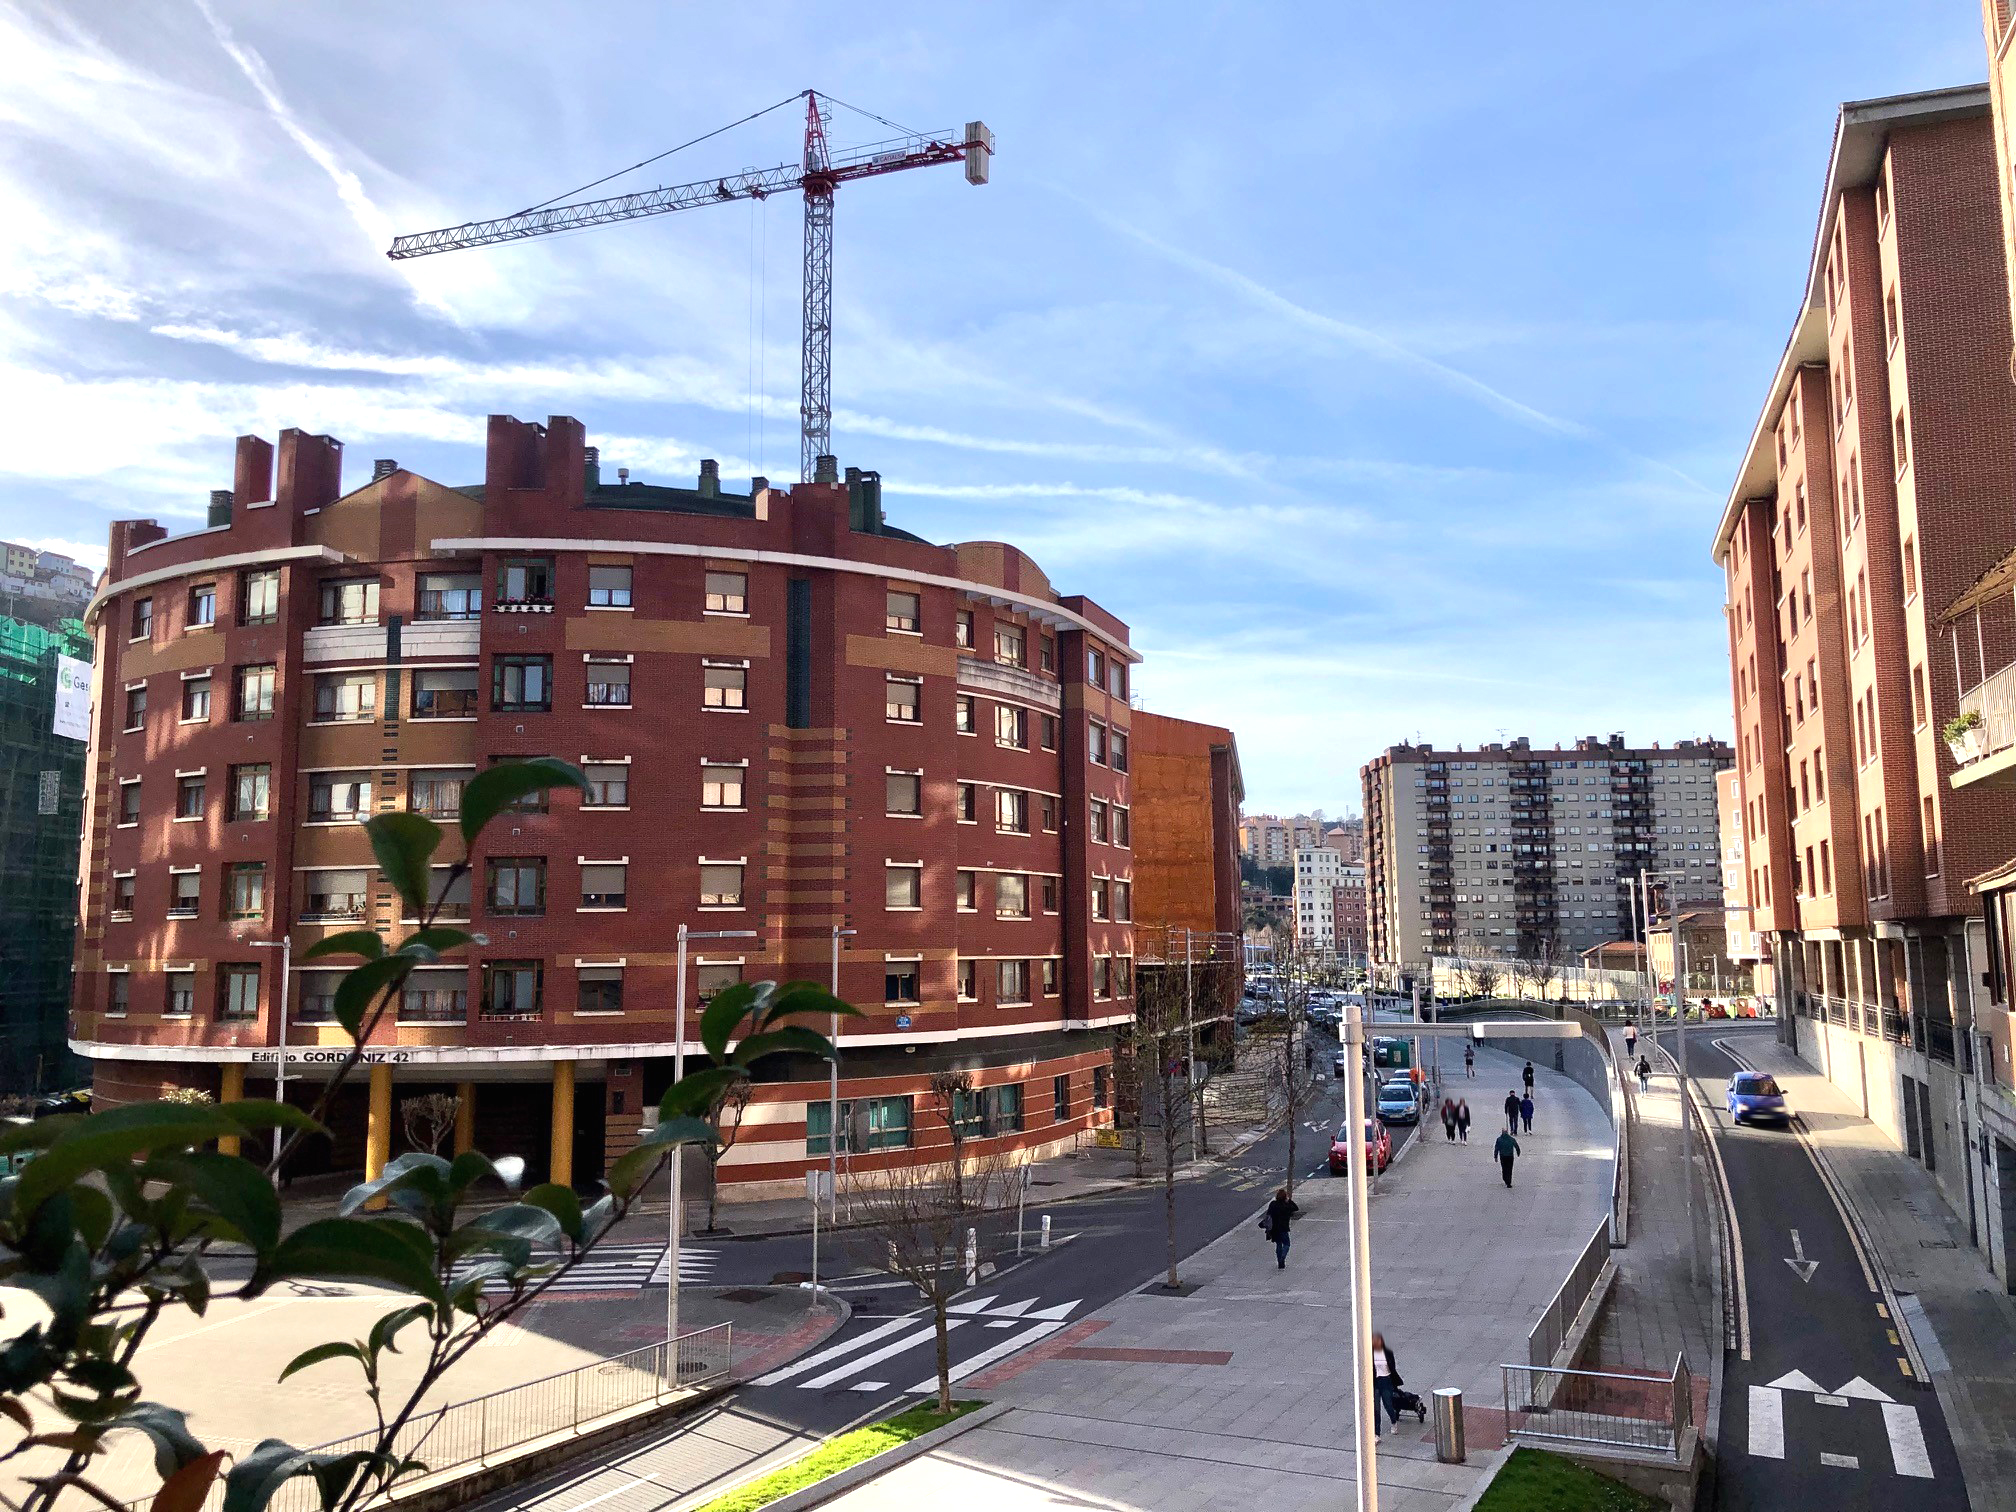 Bilbao-obra-12.3.24-4